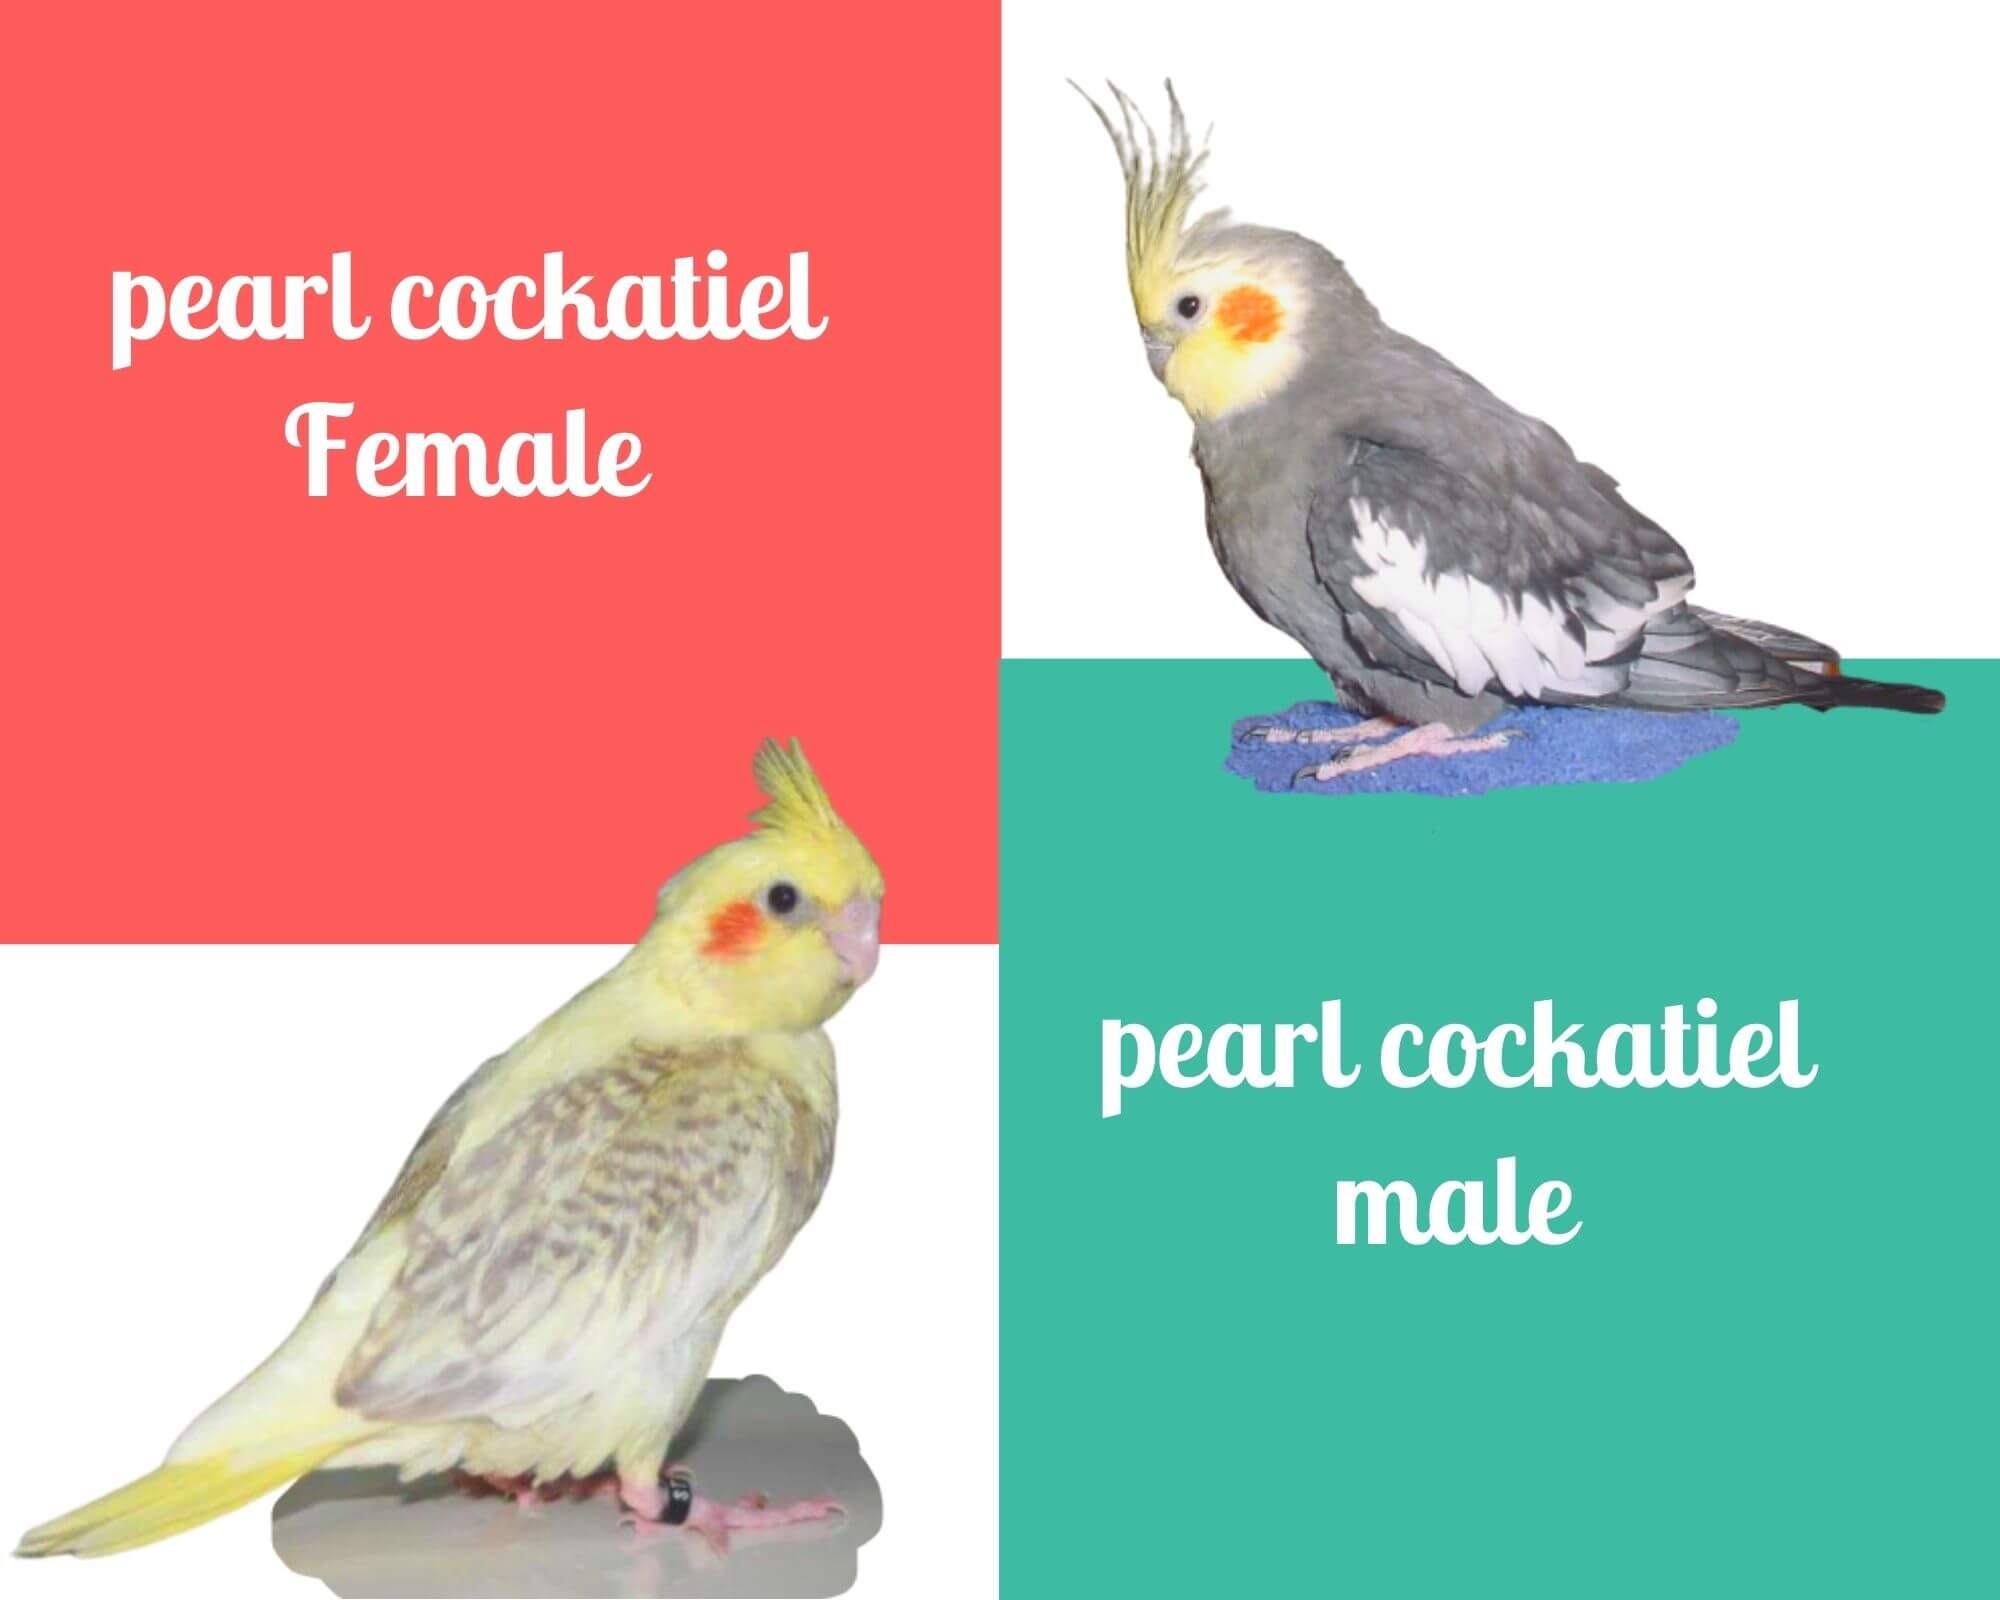 Pearl cockatiel